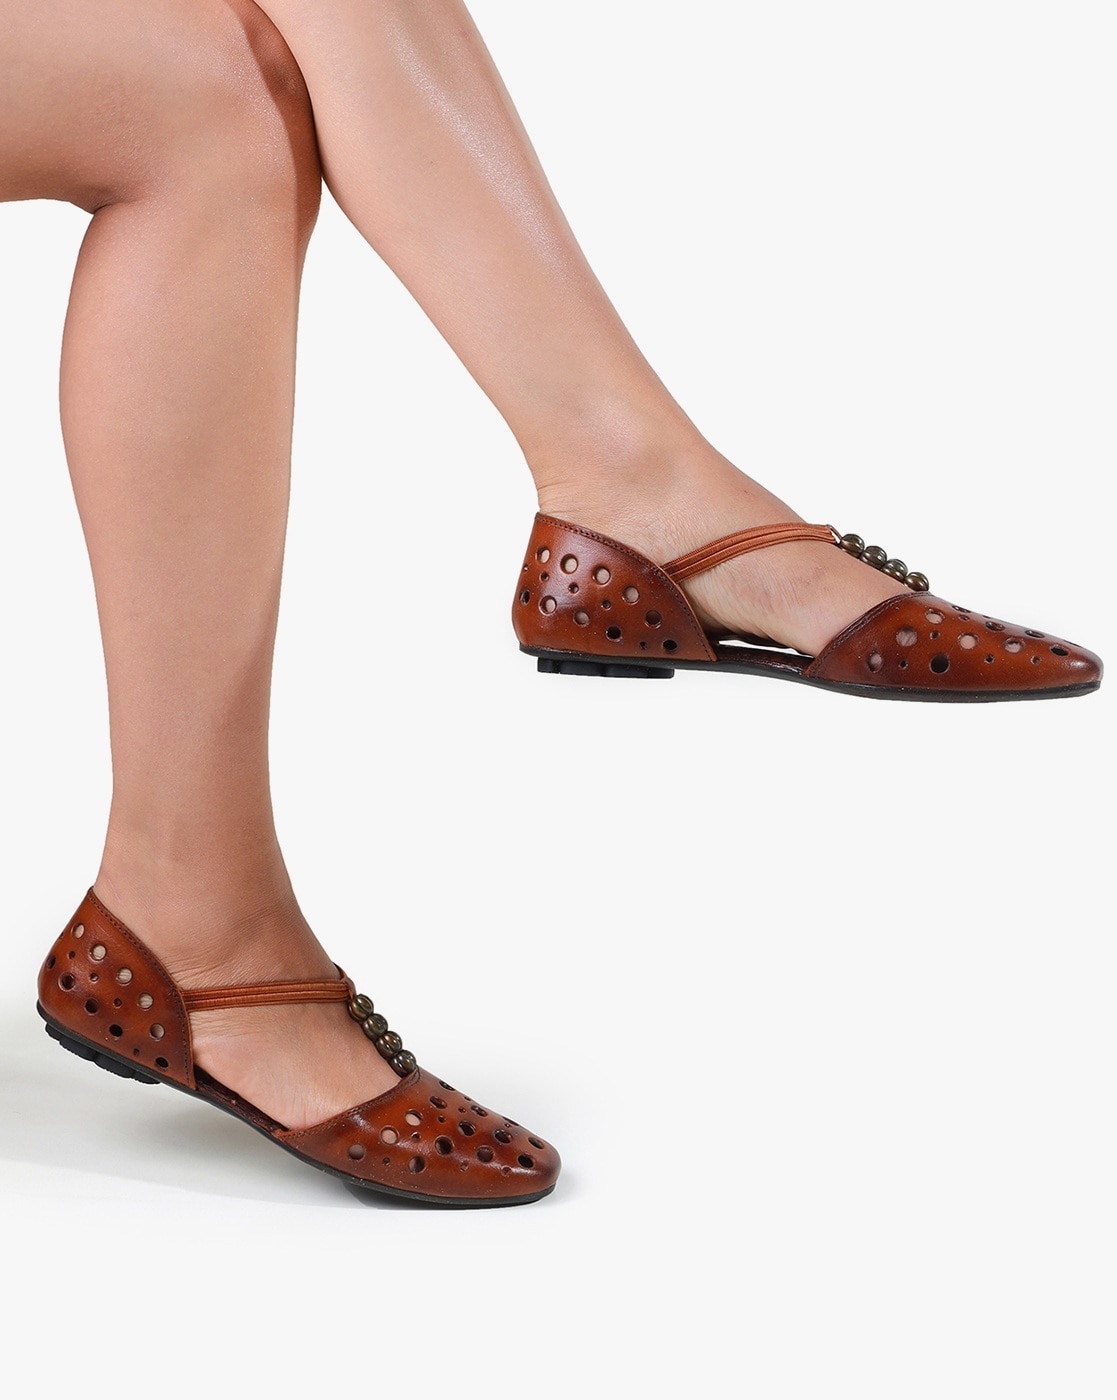 Buy Catwalk Sling Back Straps Braided Sandals Blue online